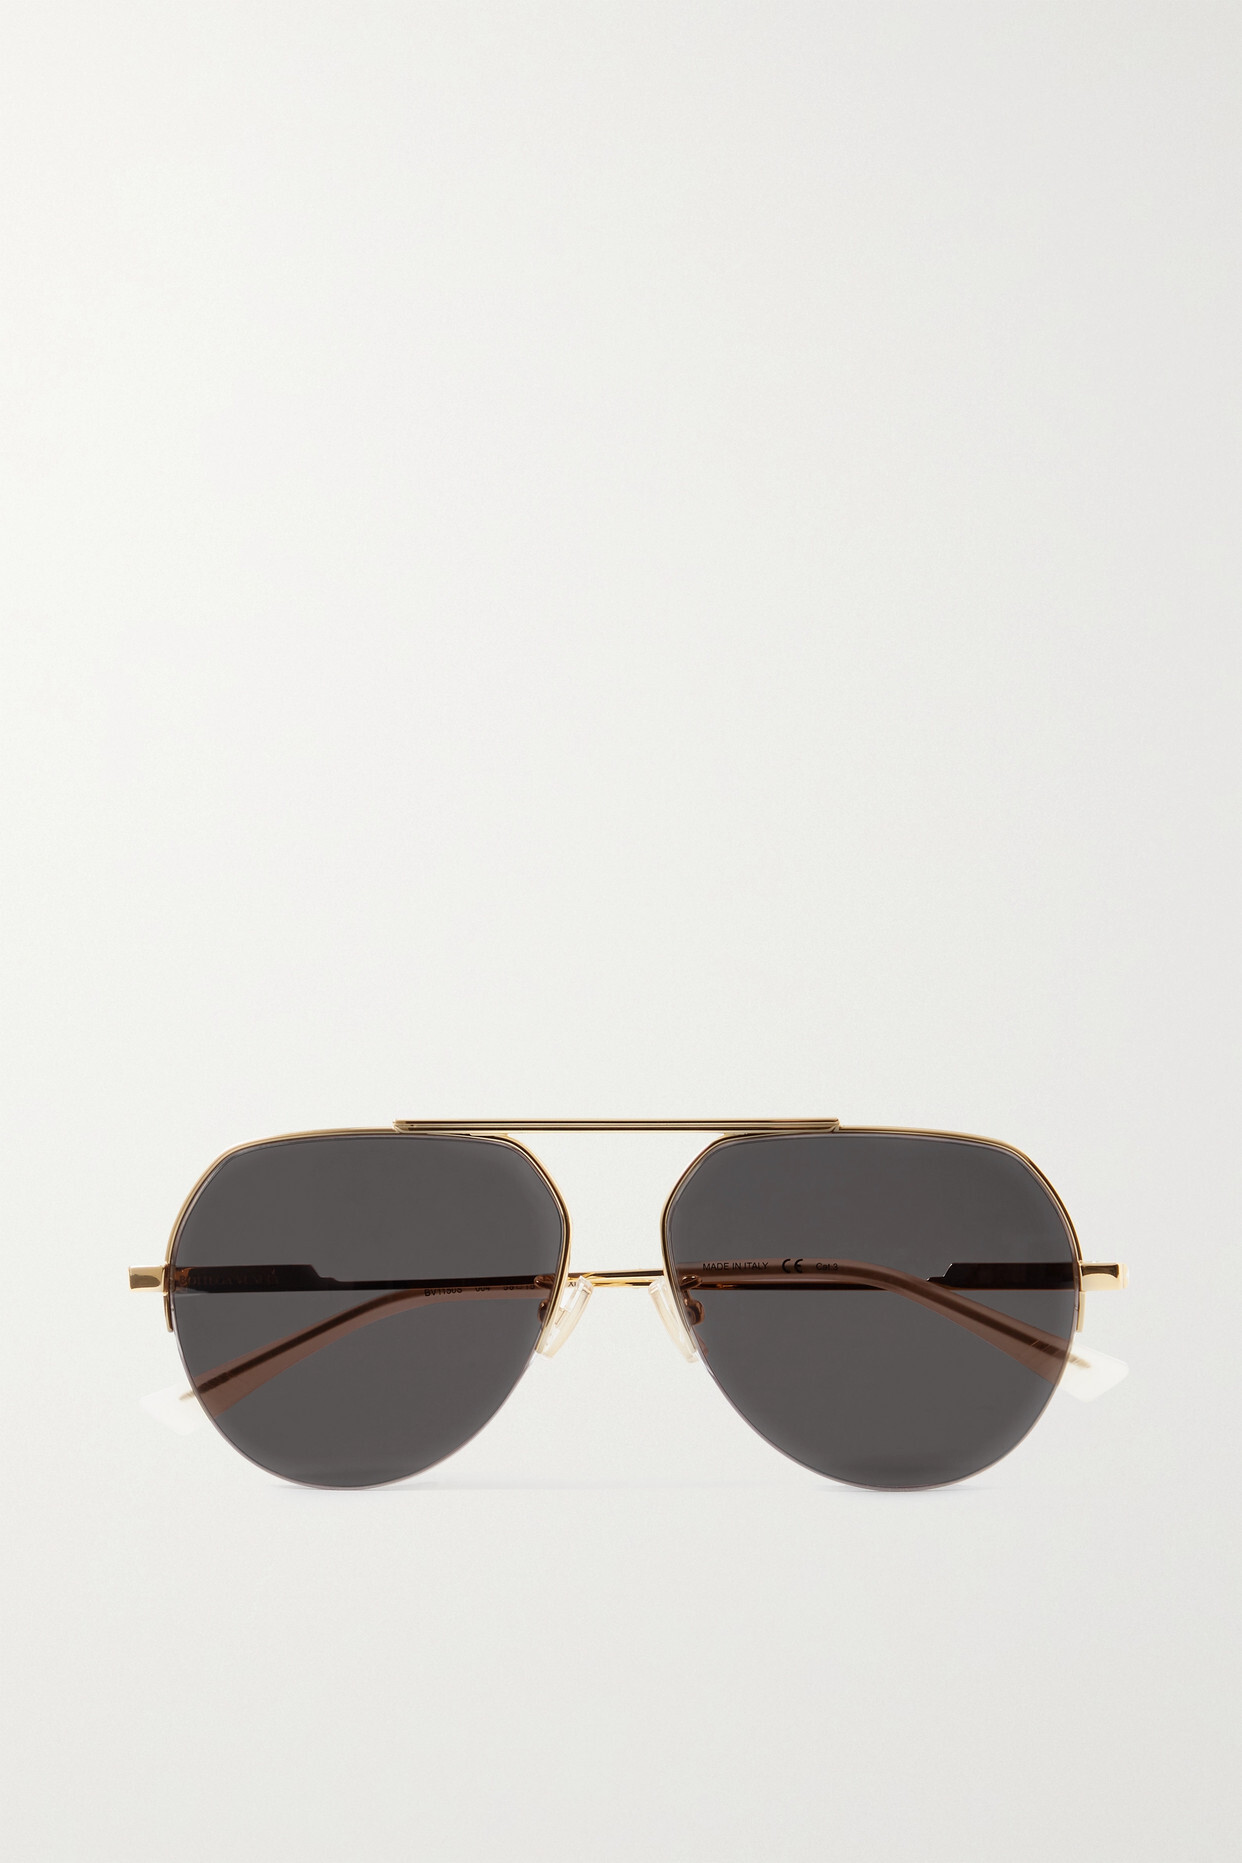 Bottega Veneta Eyewear - Aviator-style Gold-tone Sunglasses - Green